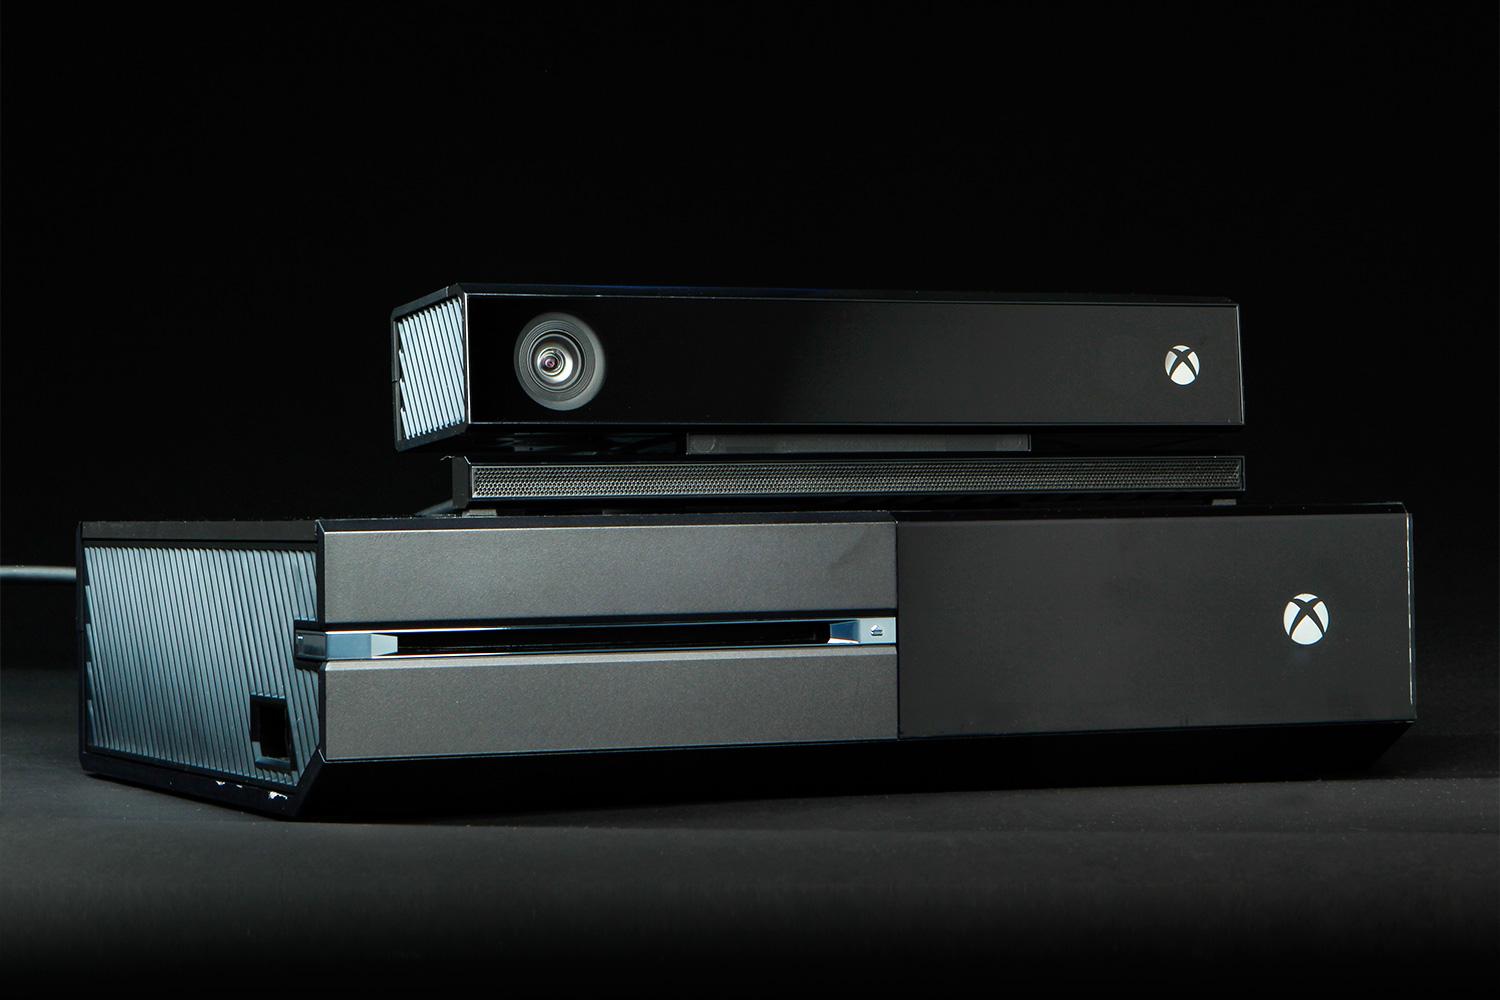 Imagen que muestra una Xbox One y Kinect